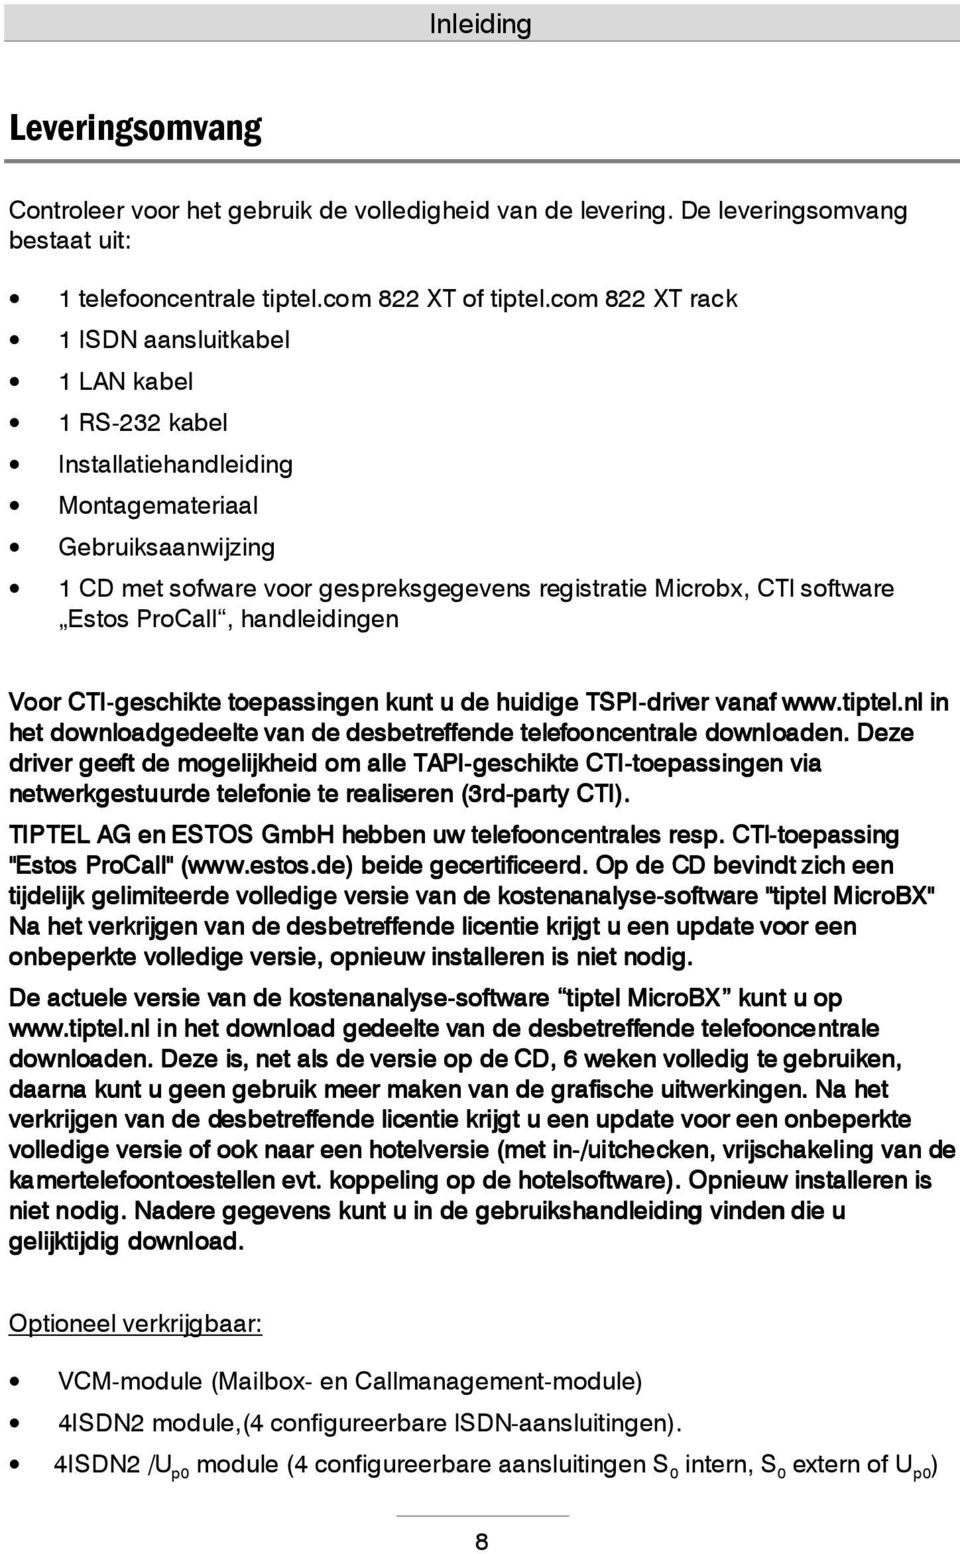 Estos ProCall, handleidingen Voor CTI-geschikte toepassingen kunt u de huidige TSPI-driver vanaf www.tiptel.nl in het downloadgedeelte van de desbetreffende telefooncentrale downloaden.